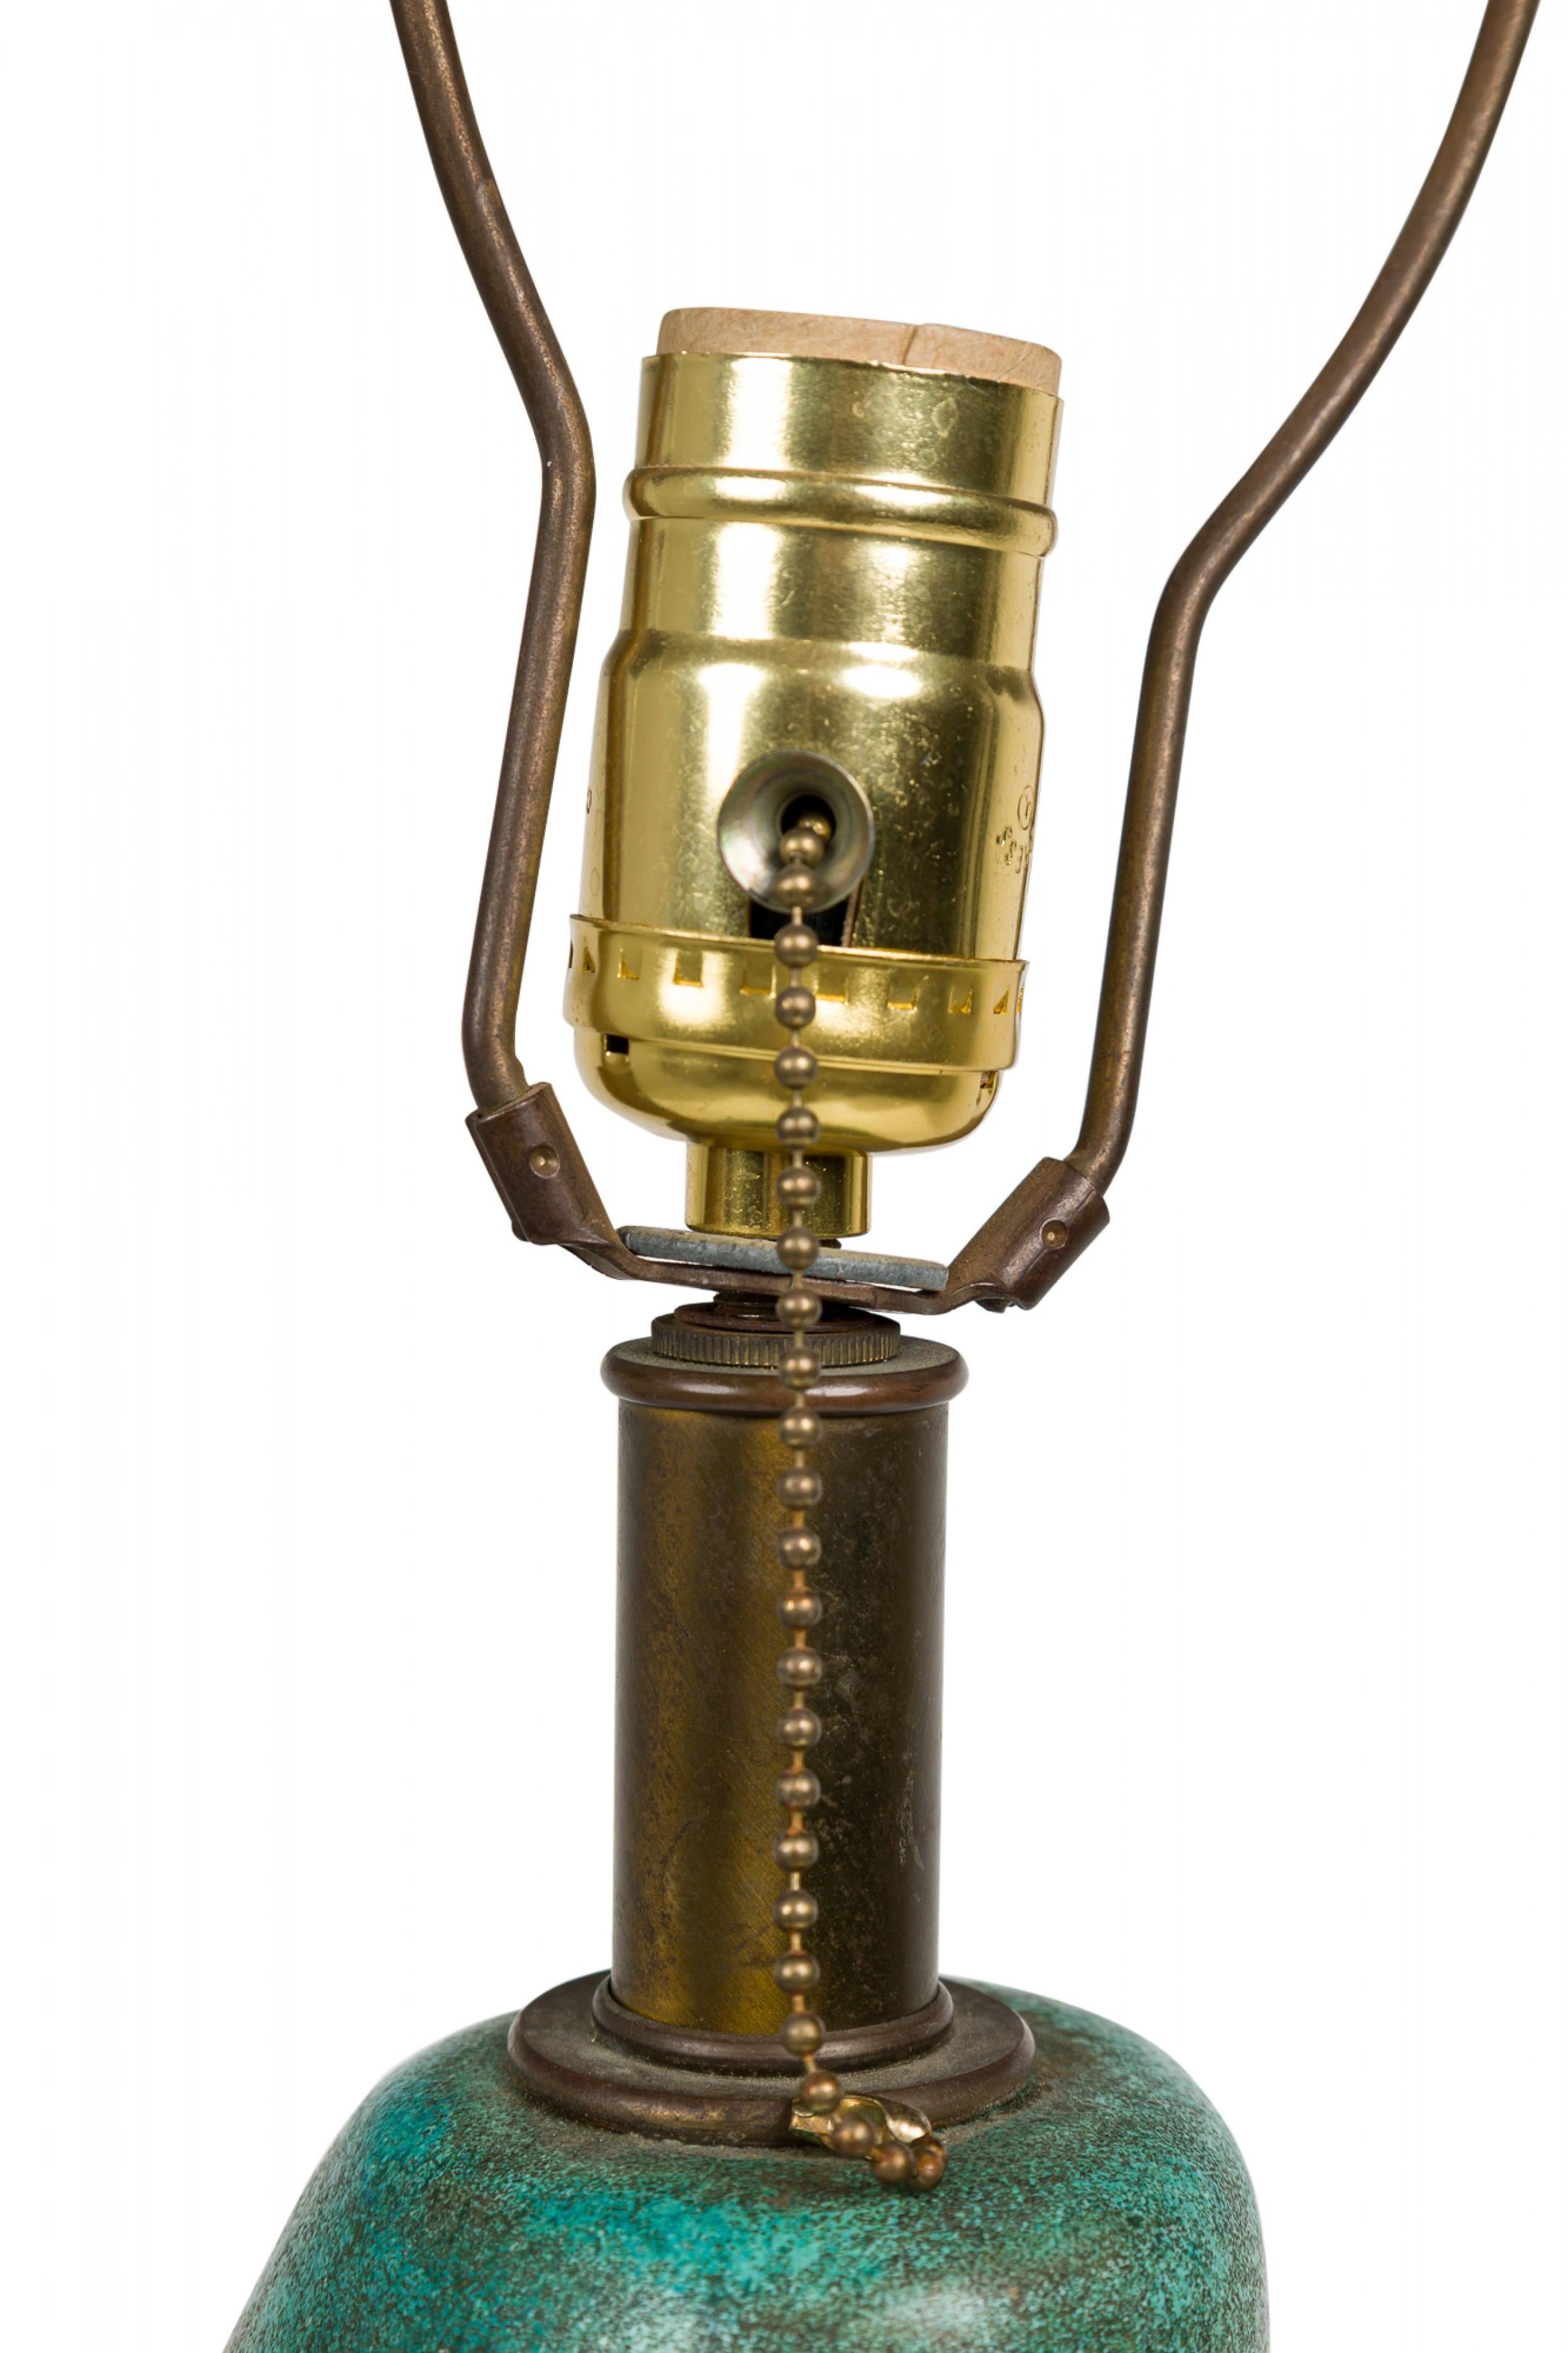 Lampe de table en céramique américaine du milieu du siècle, de forme organique effilée, dotée d'une tige en laiton allongée, d'une harpe, d'un épi de faîtage cylindrique et d'une prise d'interrupteur fonctionnelle, d'un corps subtilement nervuré